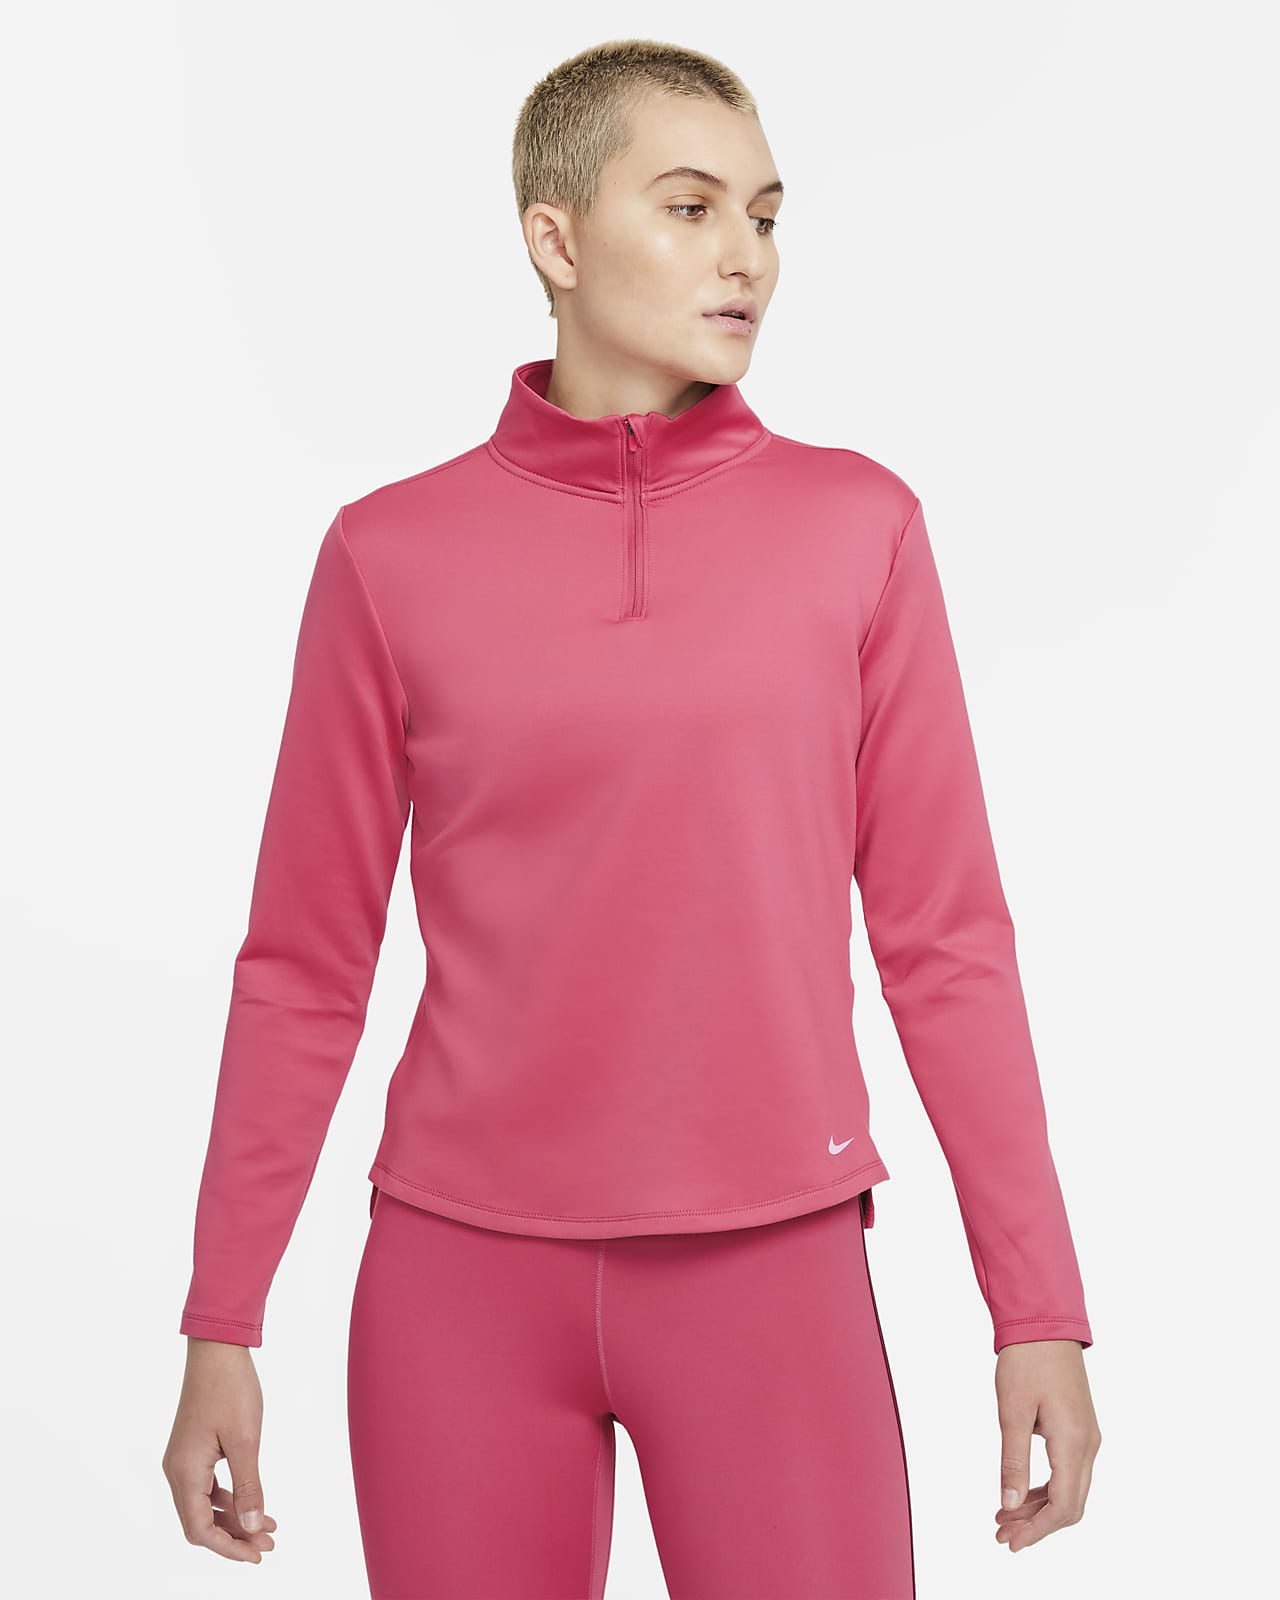 Γυναικεία μακρυμάνικη μπλούζα με φερμουάρ στο μισό μήκος Nike Therma-FIT One